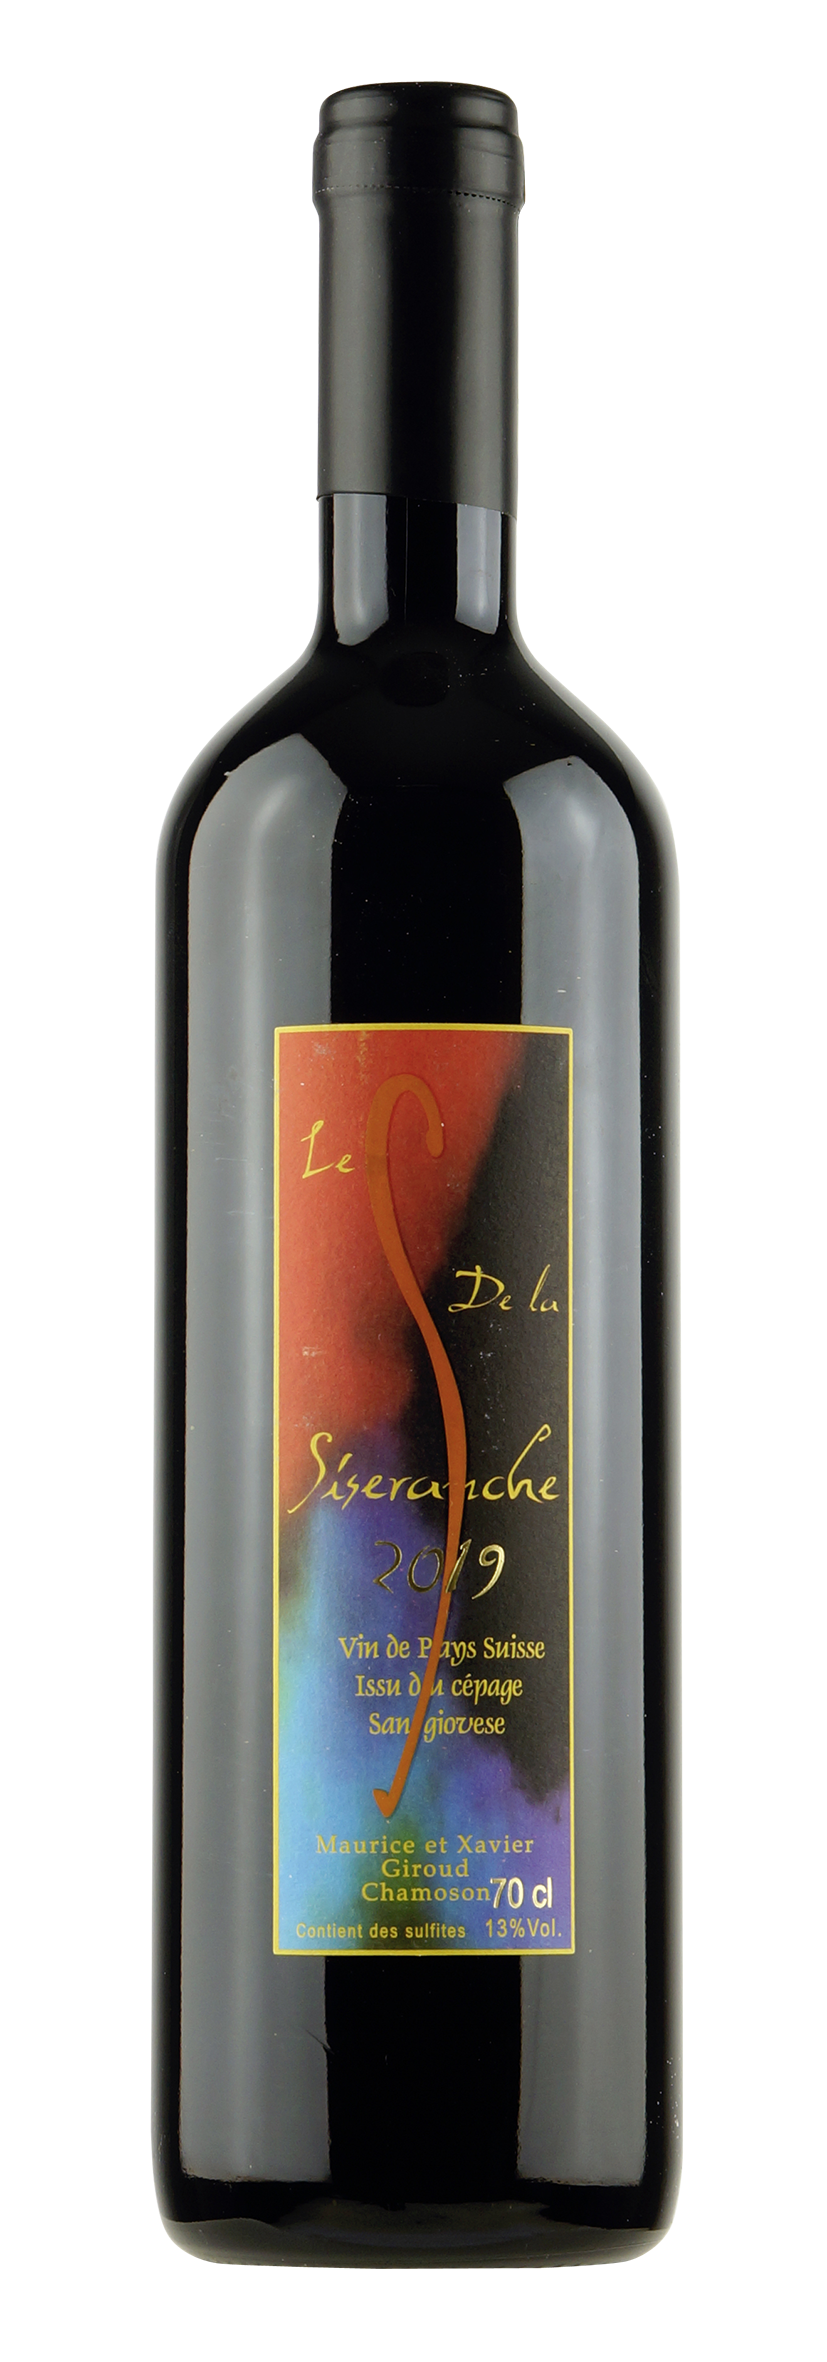 Vin de Pays Suisse Sangiovese Le S de la Siseranche 2019